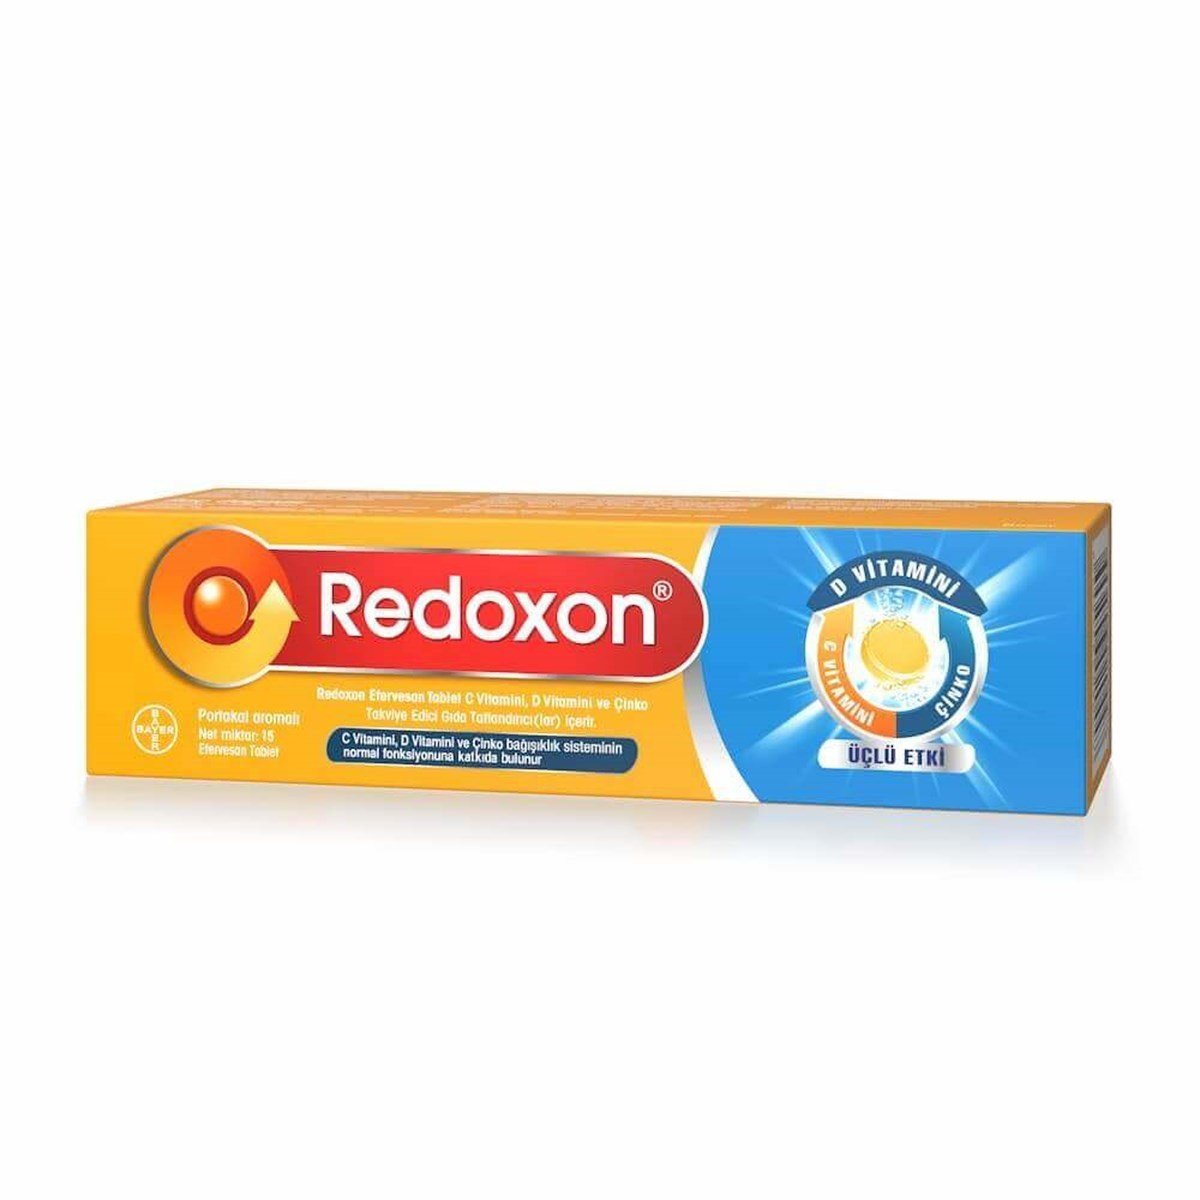 Redoxon 3'lü Etki Efervesan 15 Tablet | Vitamin Dolabı